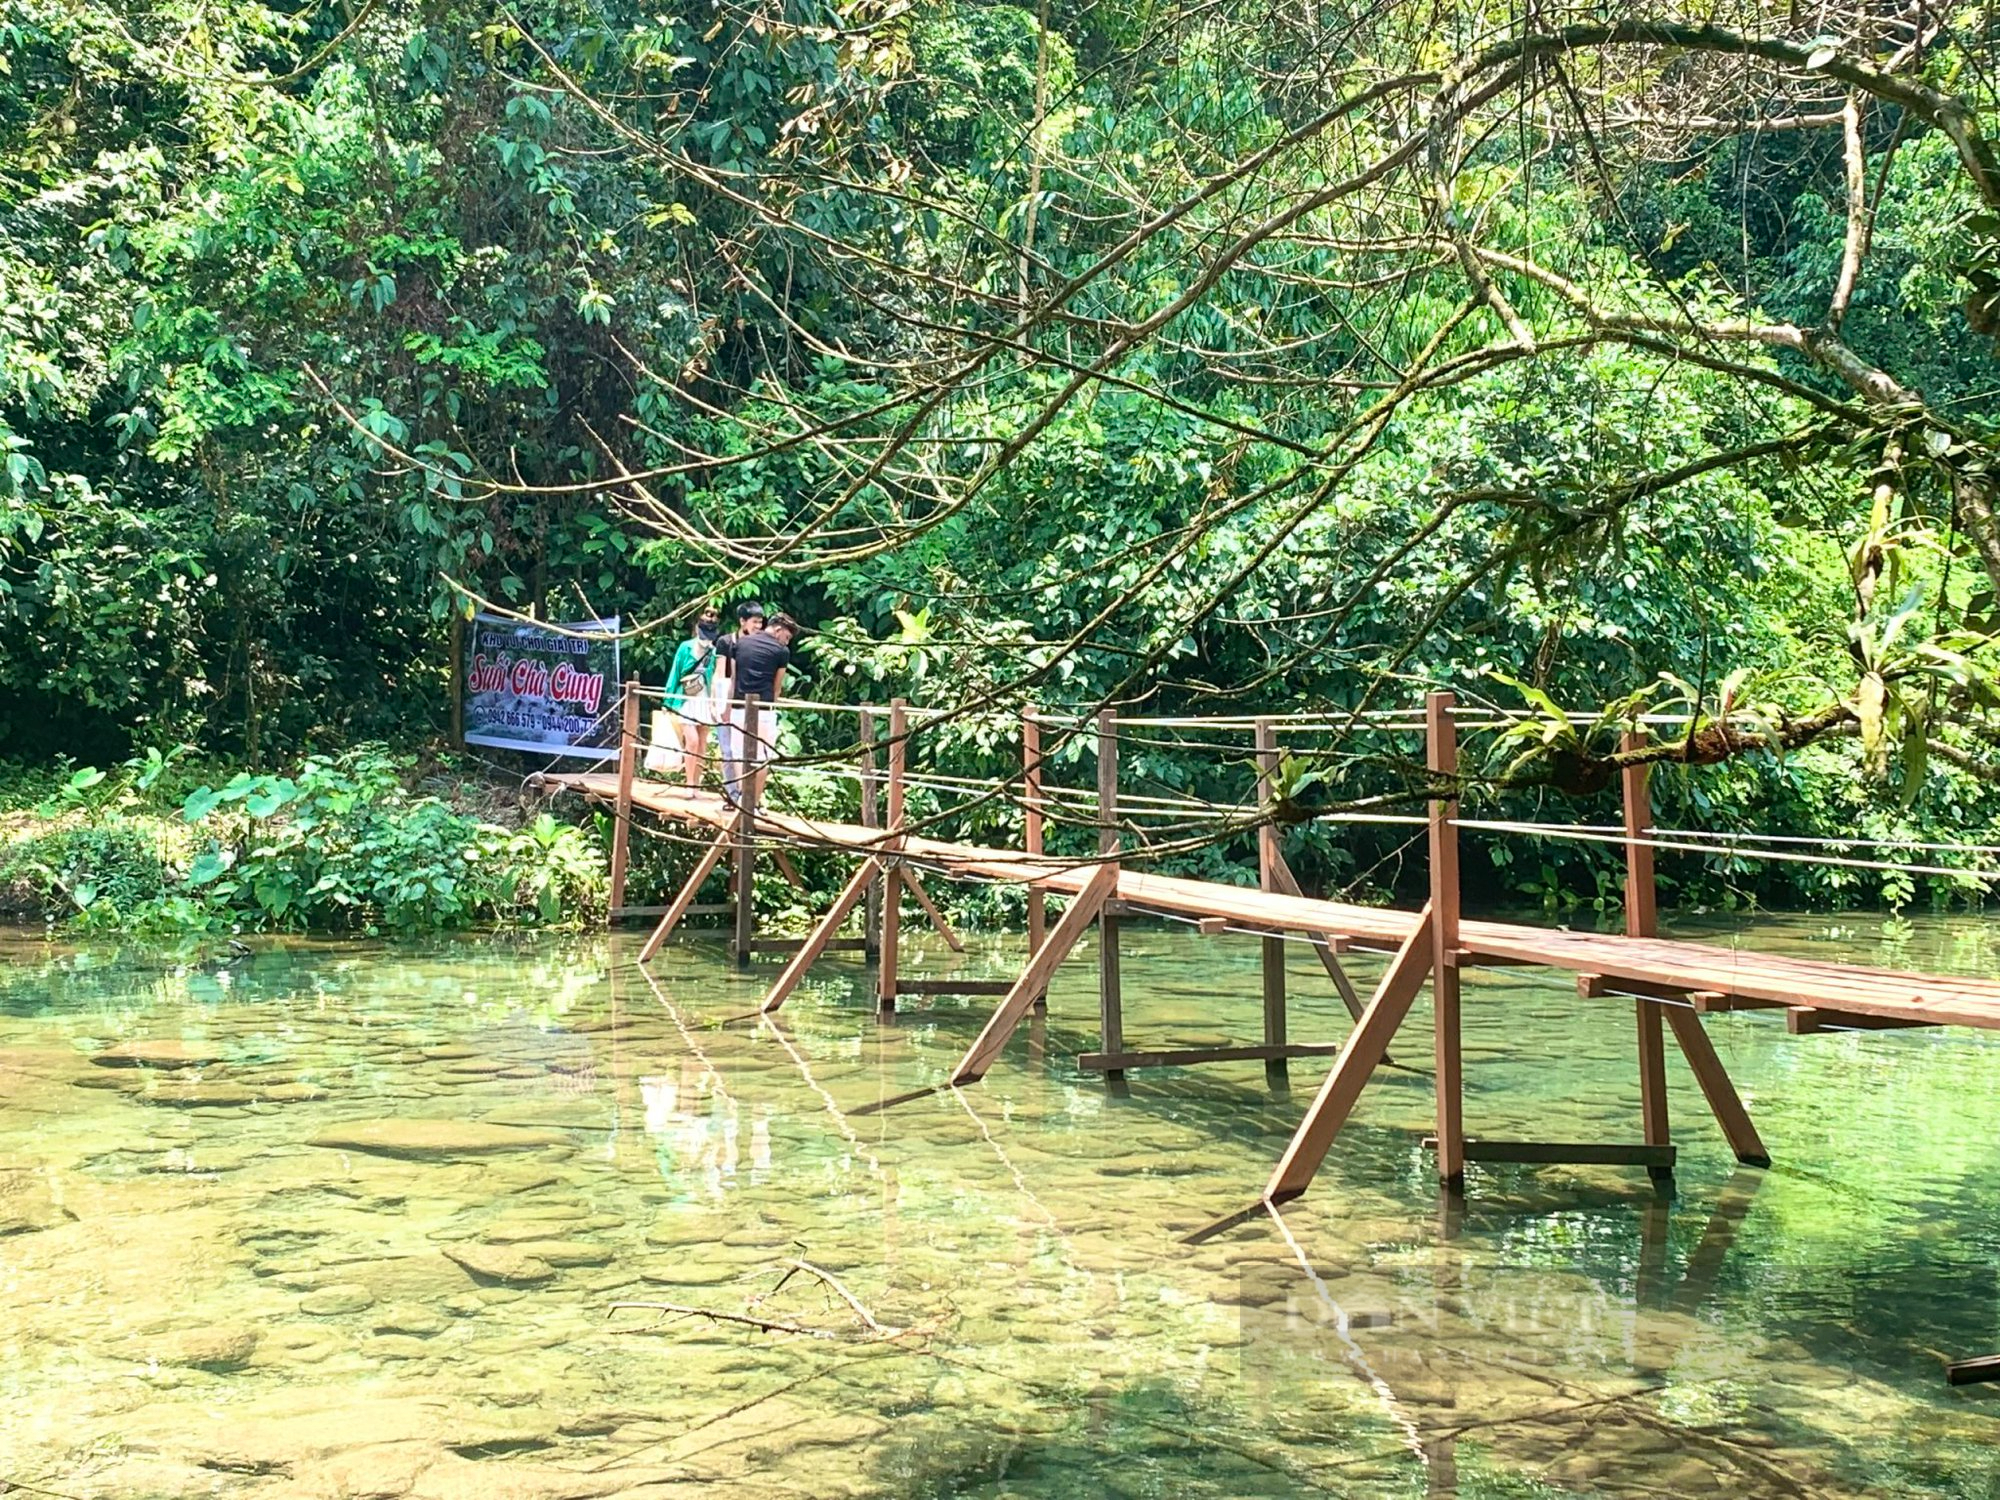 Vụ khu vui chơi giải trí không phép giữa rừng phòng hộ ở Quảng Bình: Chủ tịch UBND tỉnh chỉ đạo kiểm tra, xử lý - Ảnh 1.